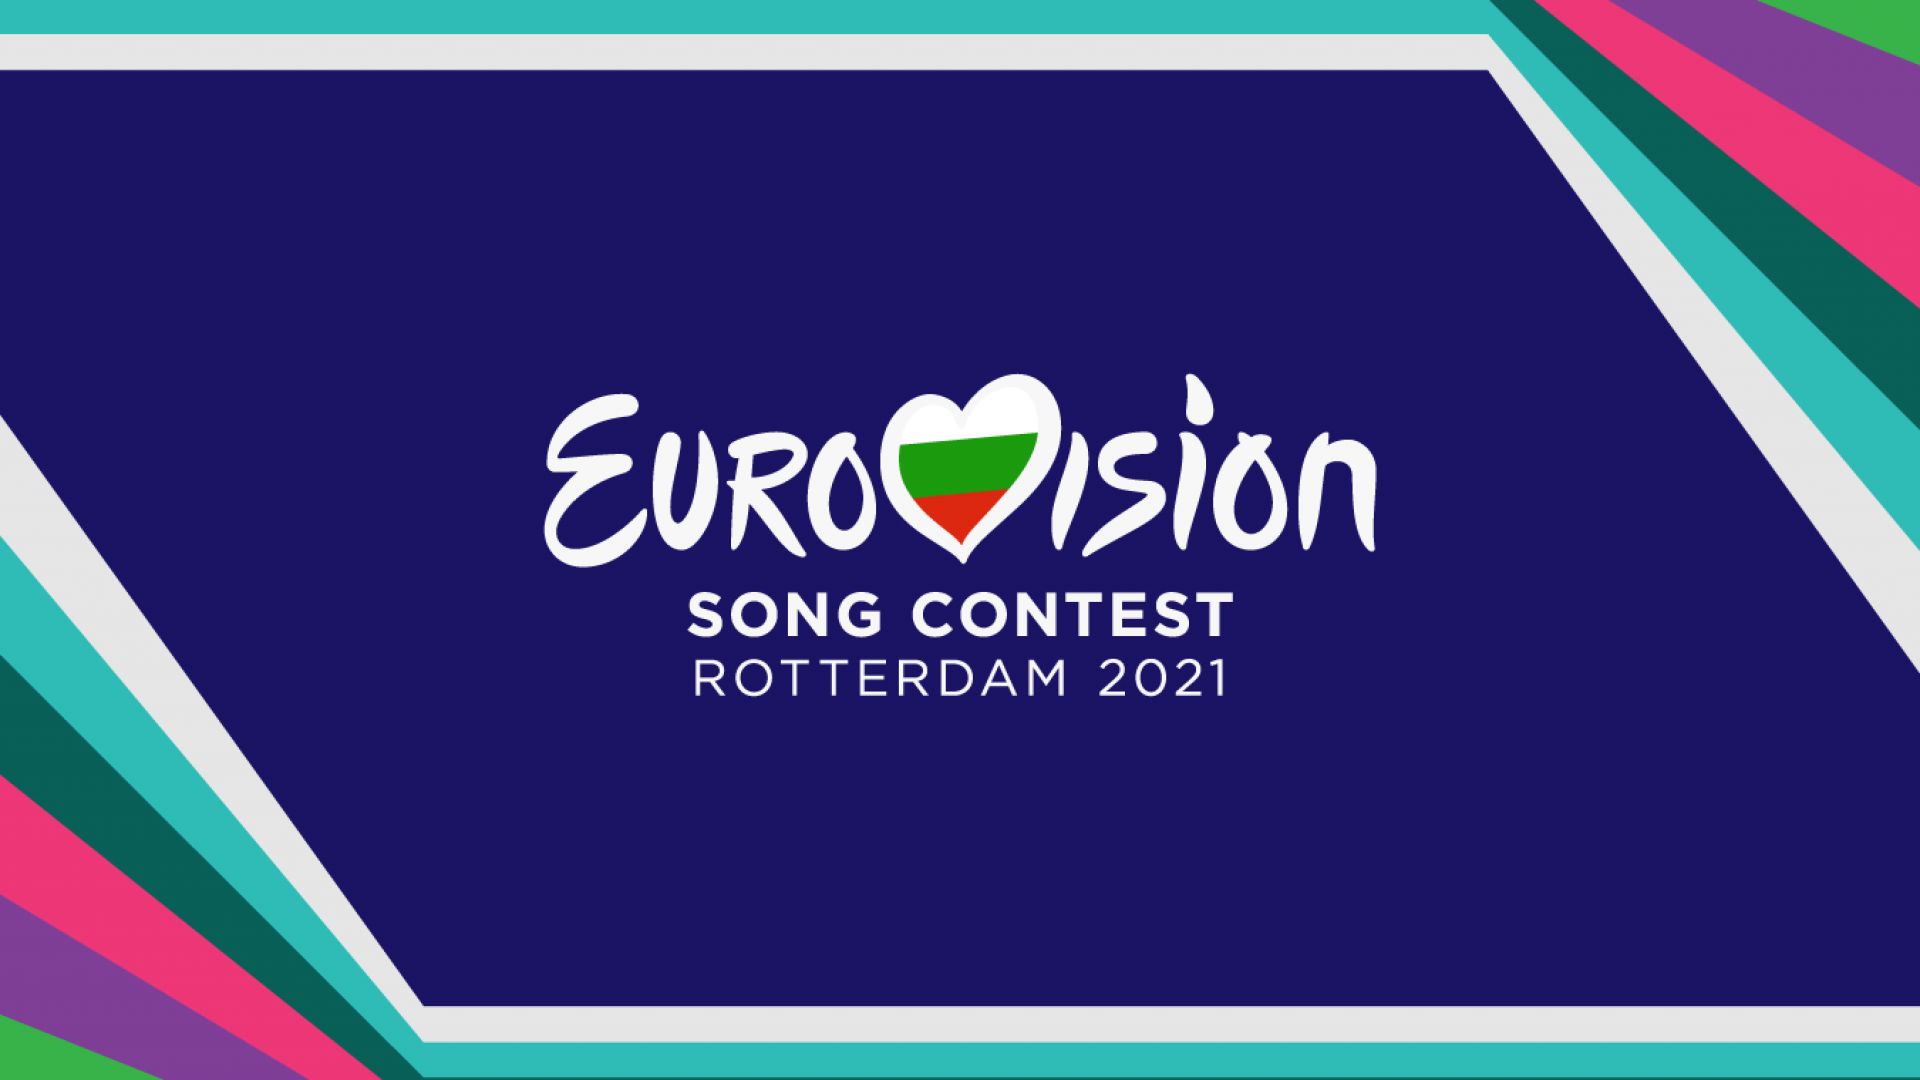  Конкурсът "Евровизия 2021" в Ротердам ще е в ограничен формат